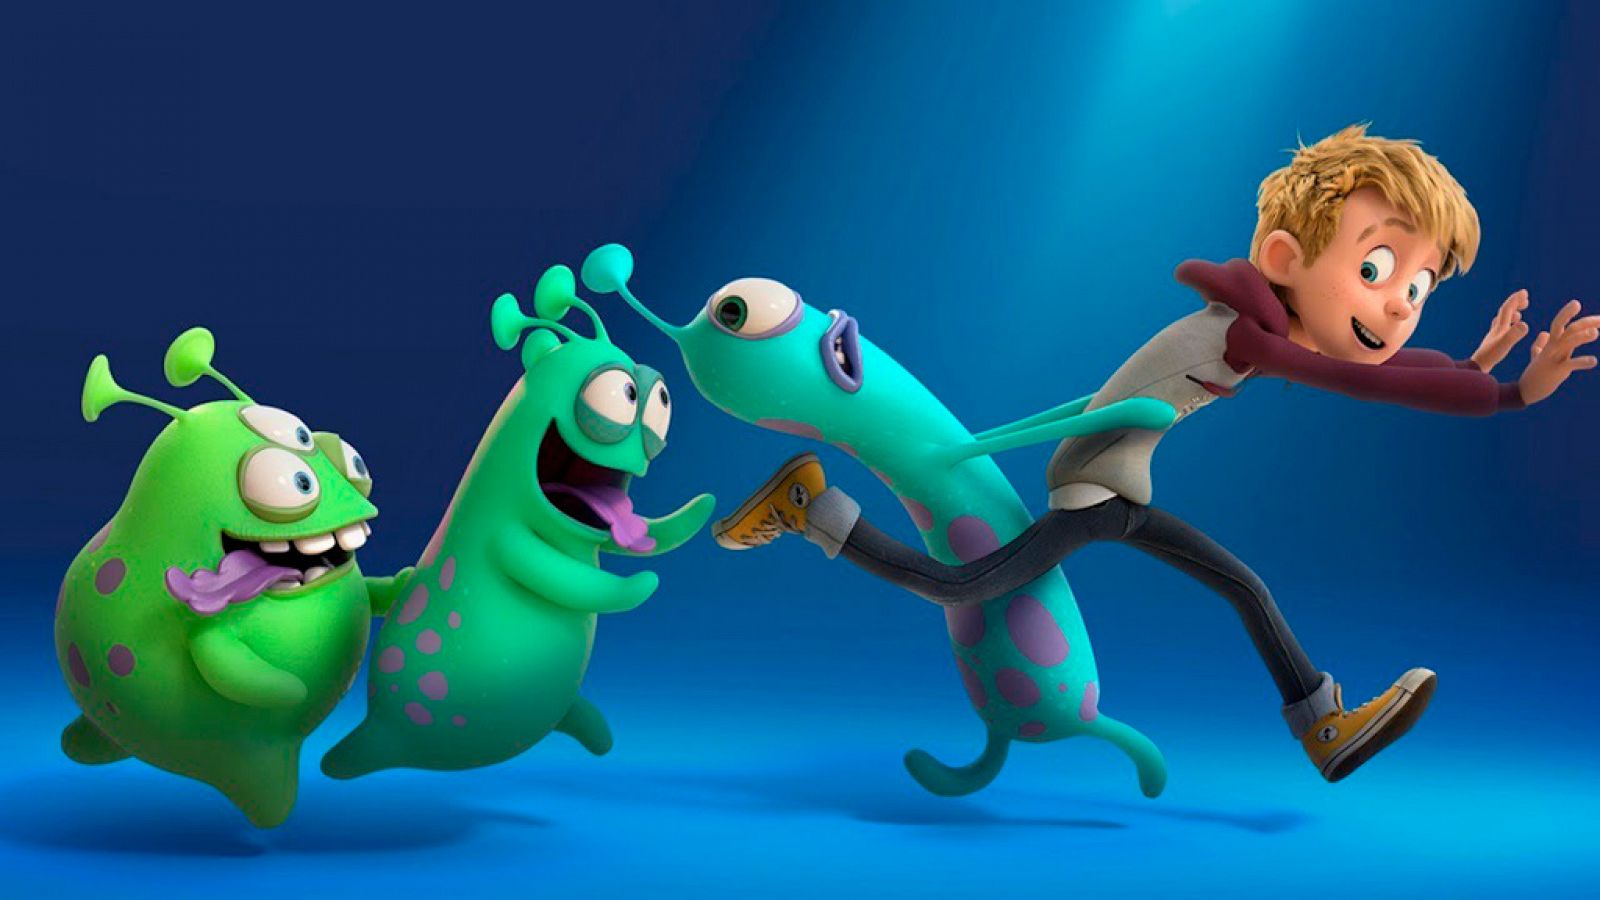 El cómic en RTVE.es: RTVE.es os ofrece un clip en exclusiva de la película de animación 'Luis y los alienígenas' | RTVE Play